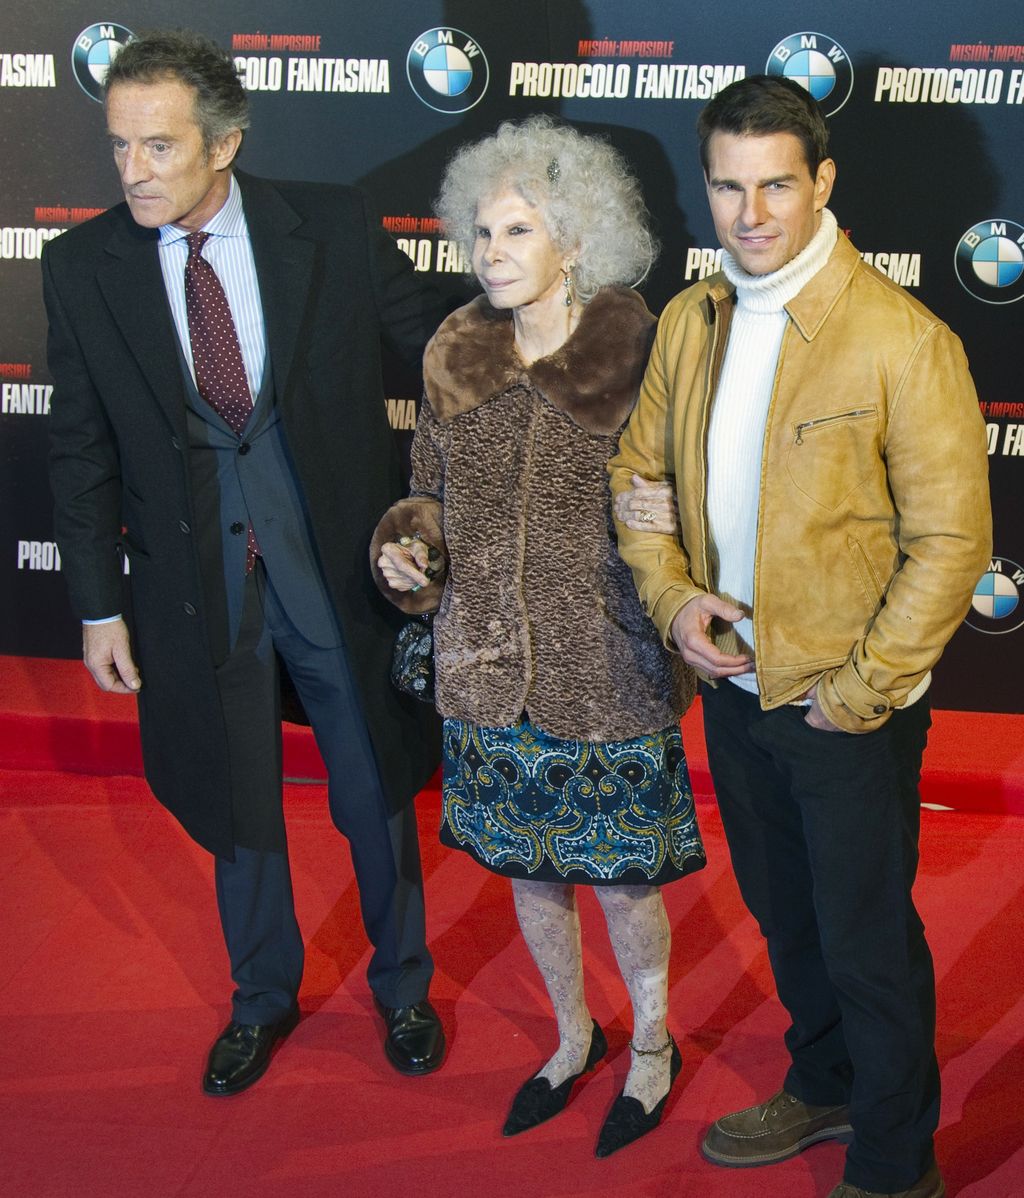 Tom Cruise presenta en Madrid "Misión Imposible: Protocolo fantasma "